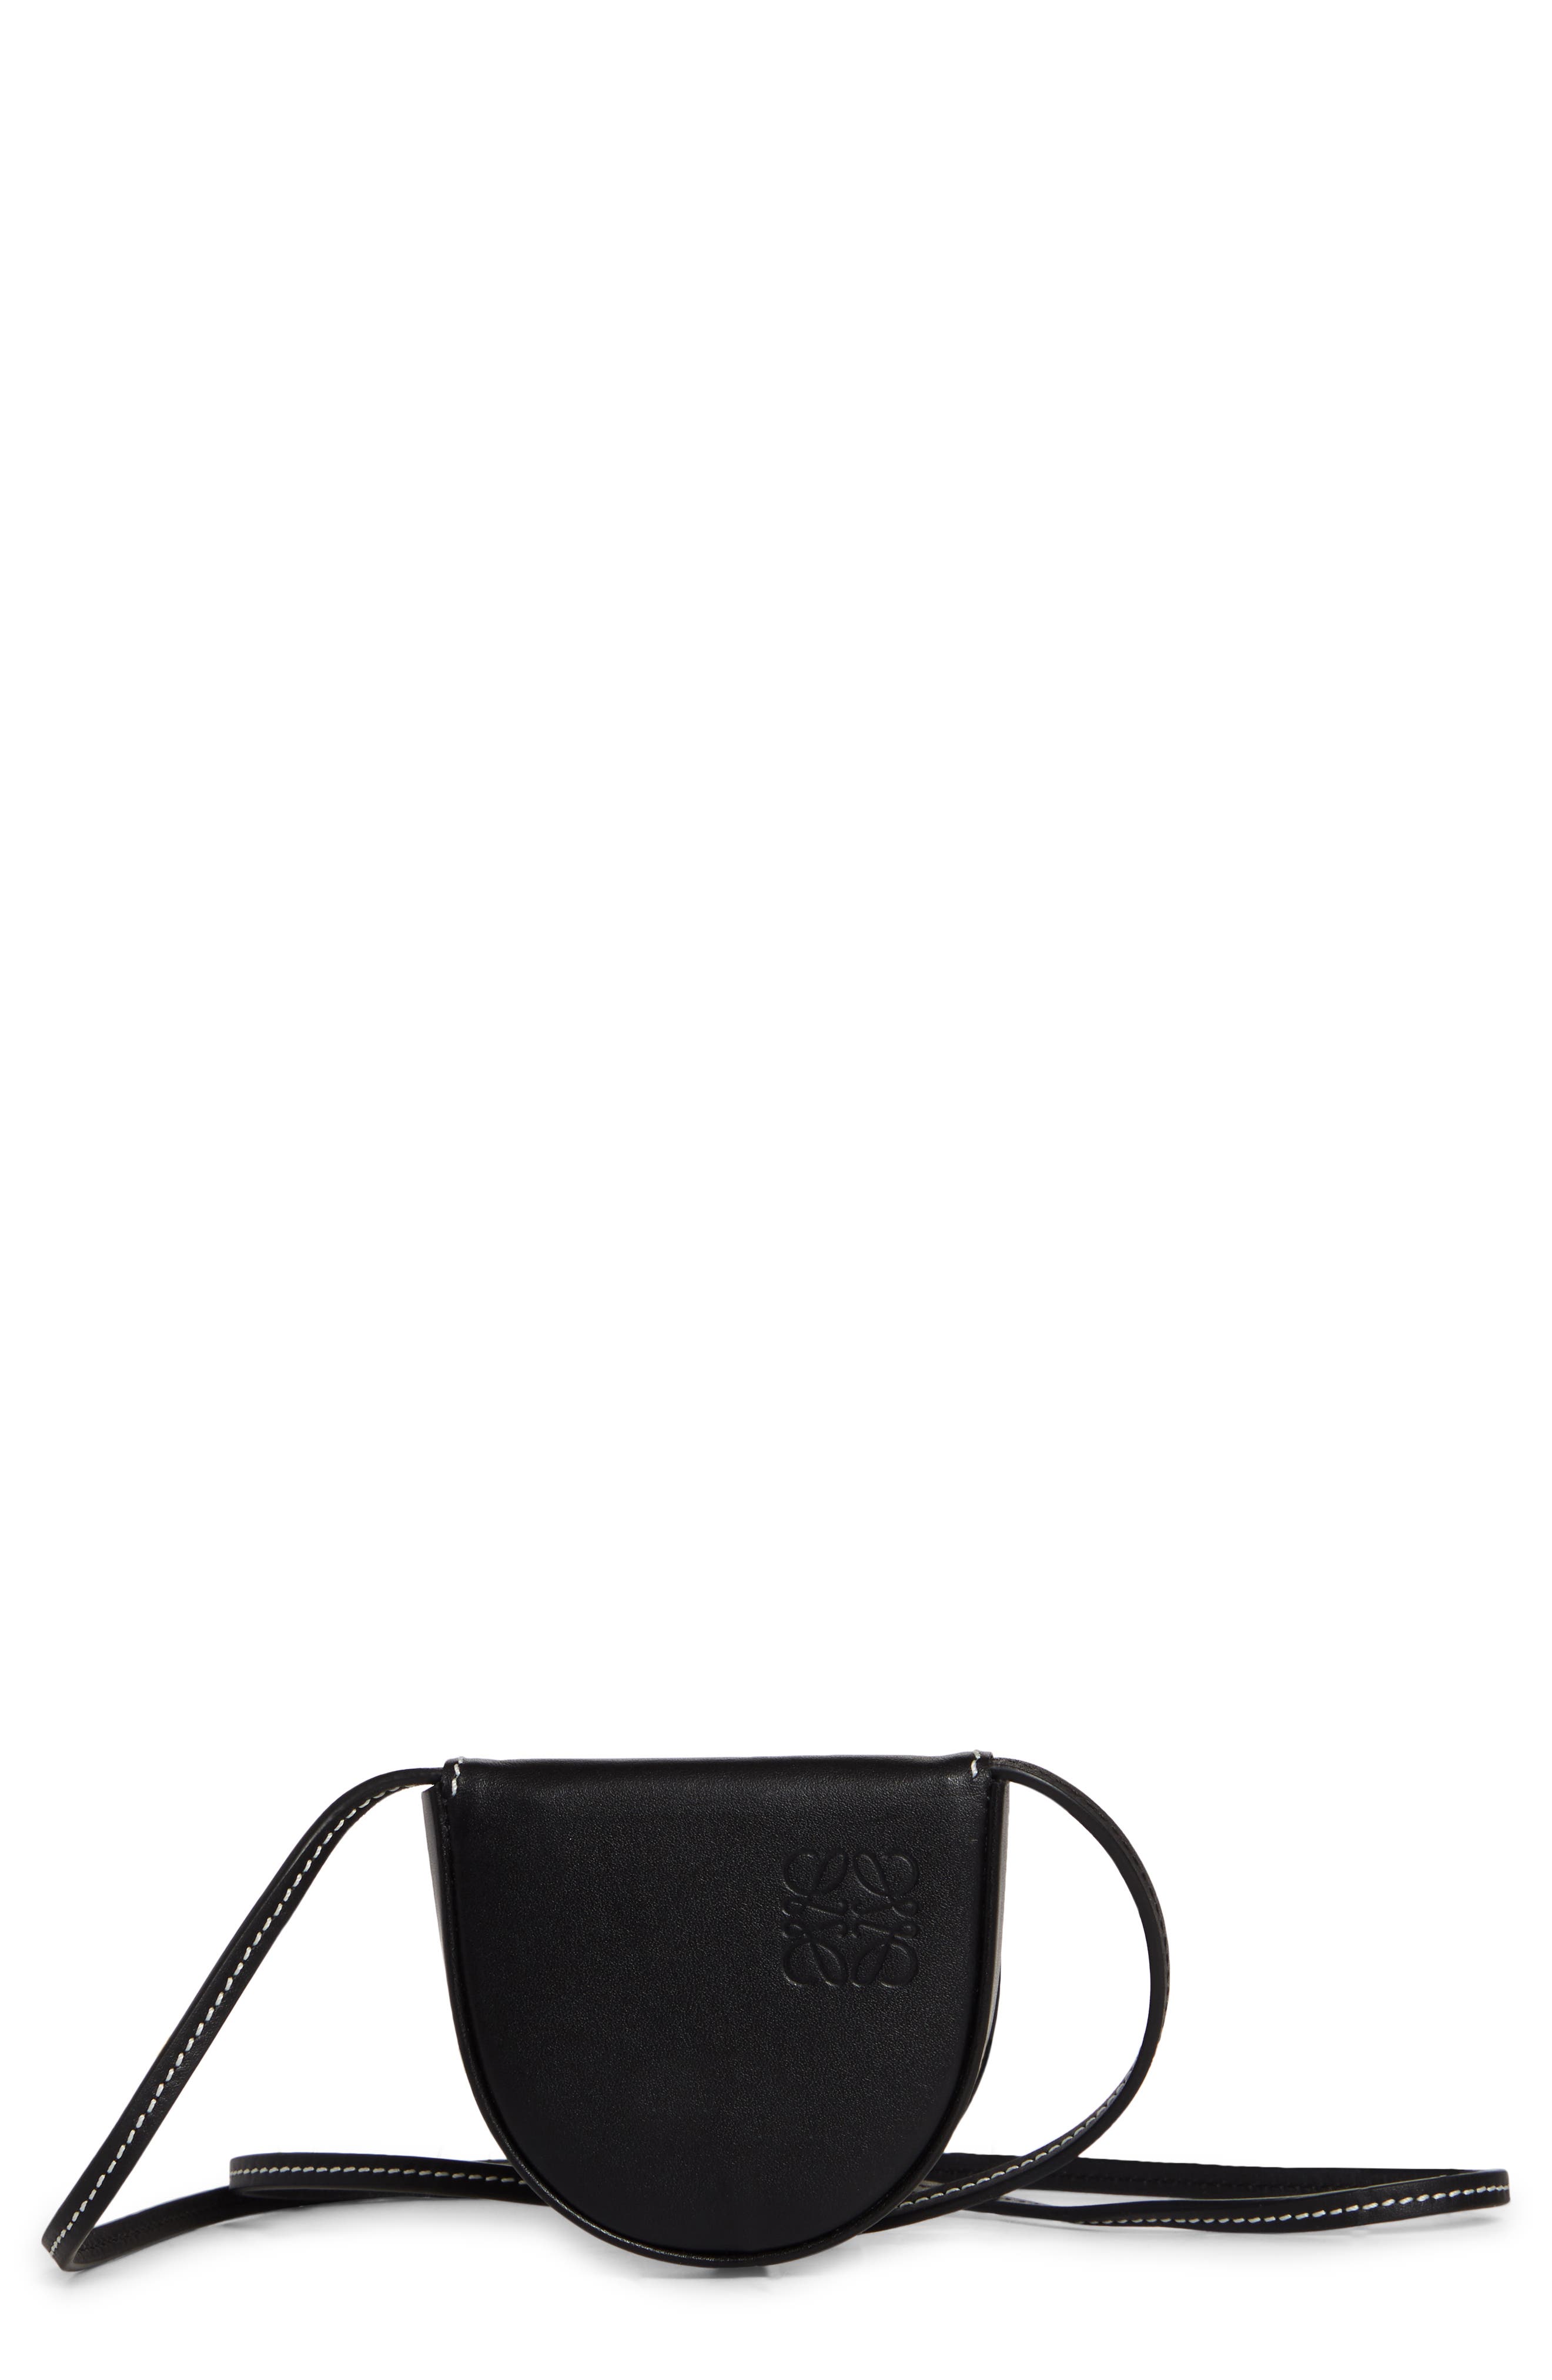 Loewe Mini Heel Leather Crossbody Bag in Black at Nordstrom